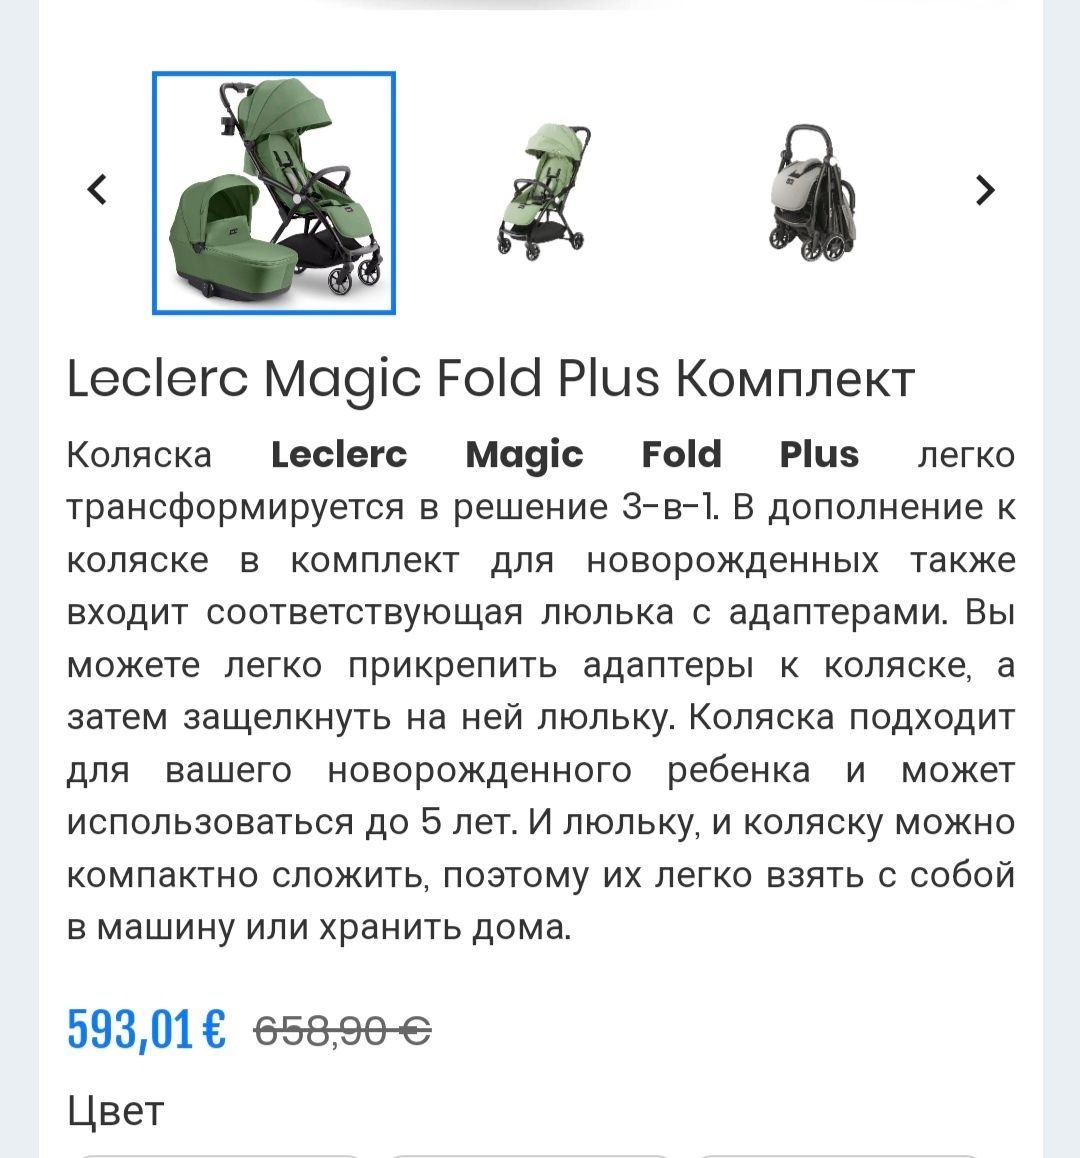 Прогулочная коляска Leclerc magic fold plus